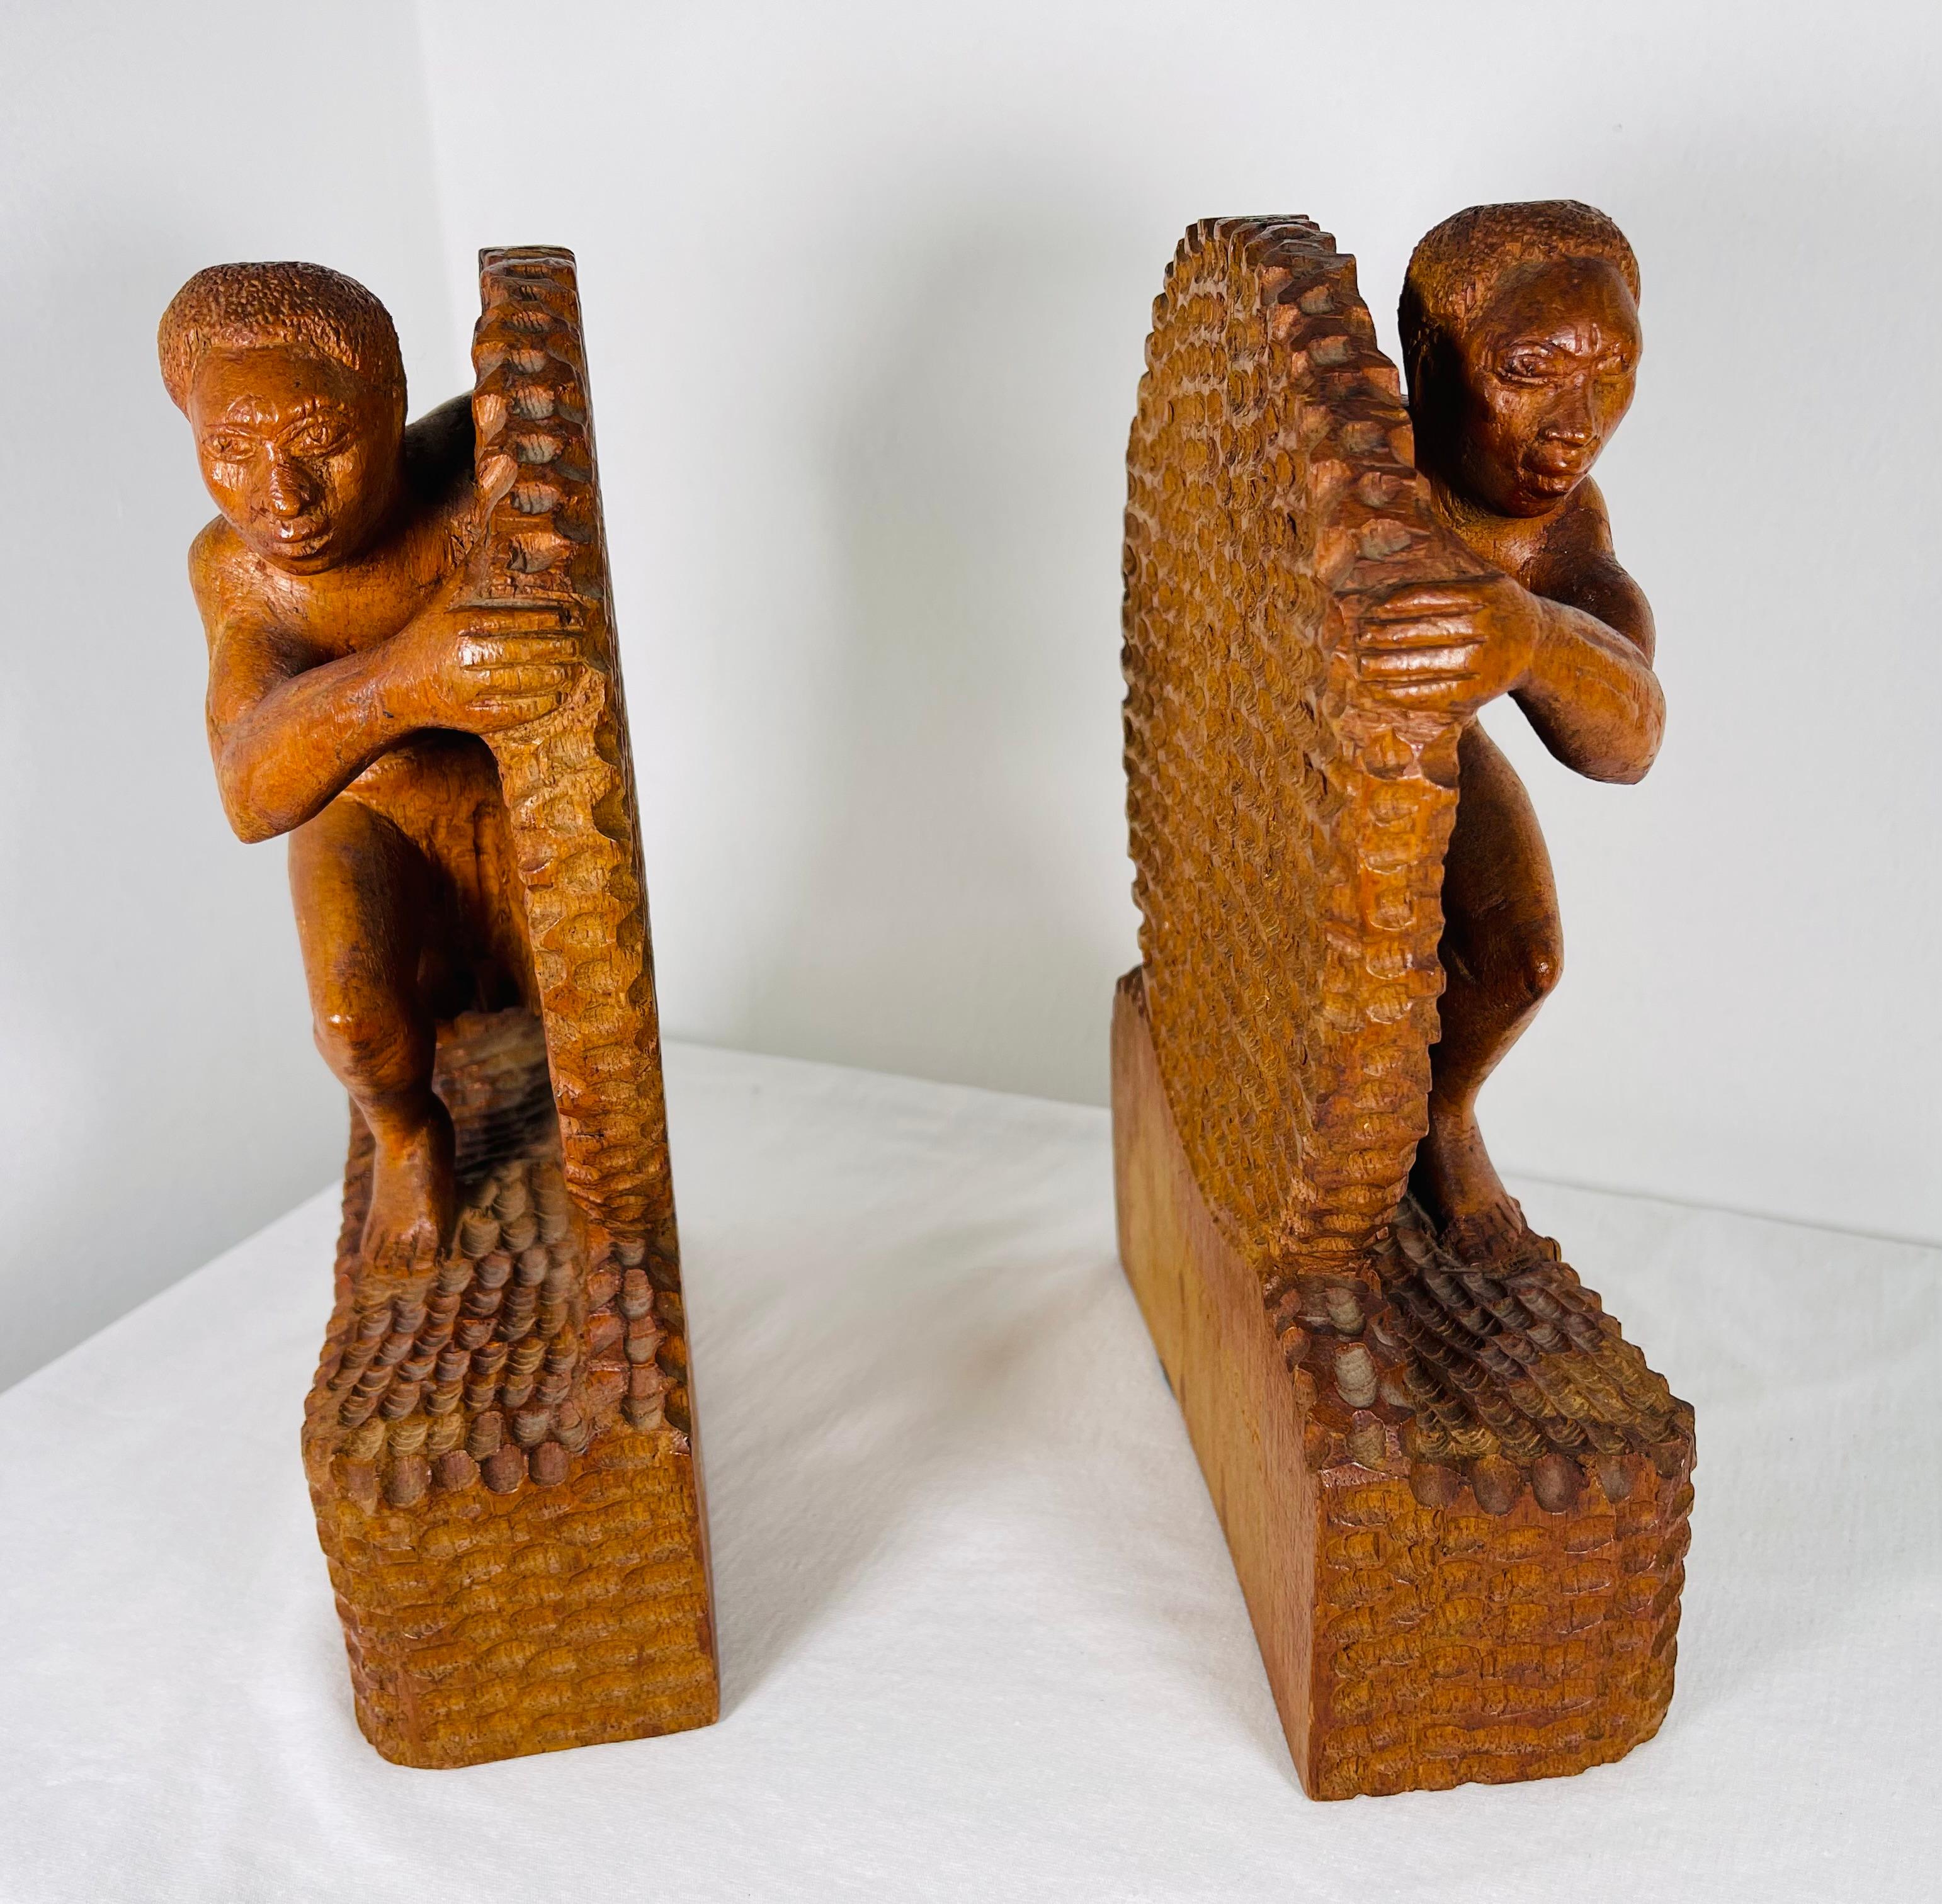 Deux serres d'époque Art Déco livrées sculptées en palissandre d'origine signées B Ralisam
La sculpture représente deux hommes presque nus dans l'effort de l'œuvre. Ils poussent une roue avec un support pour les pieds. Les muscles des personnages